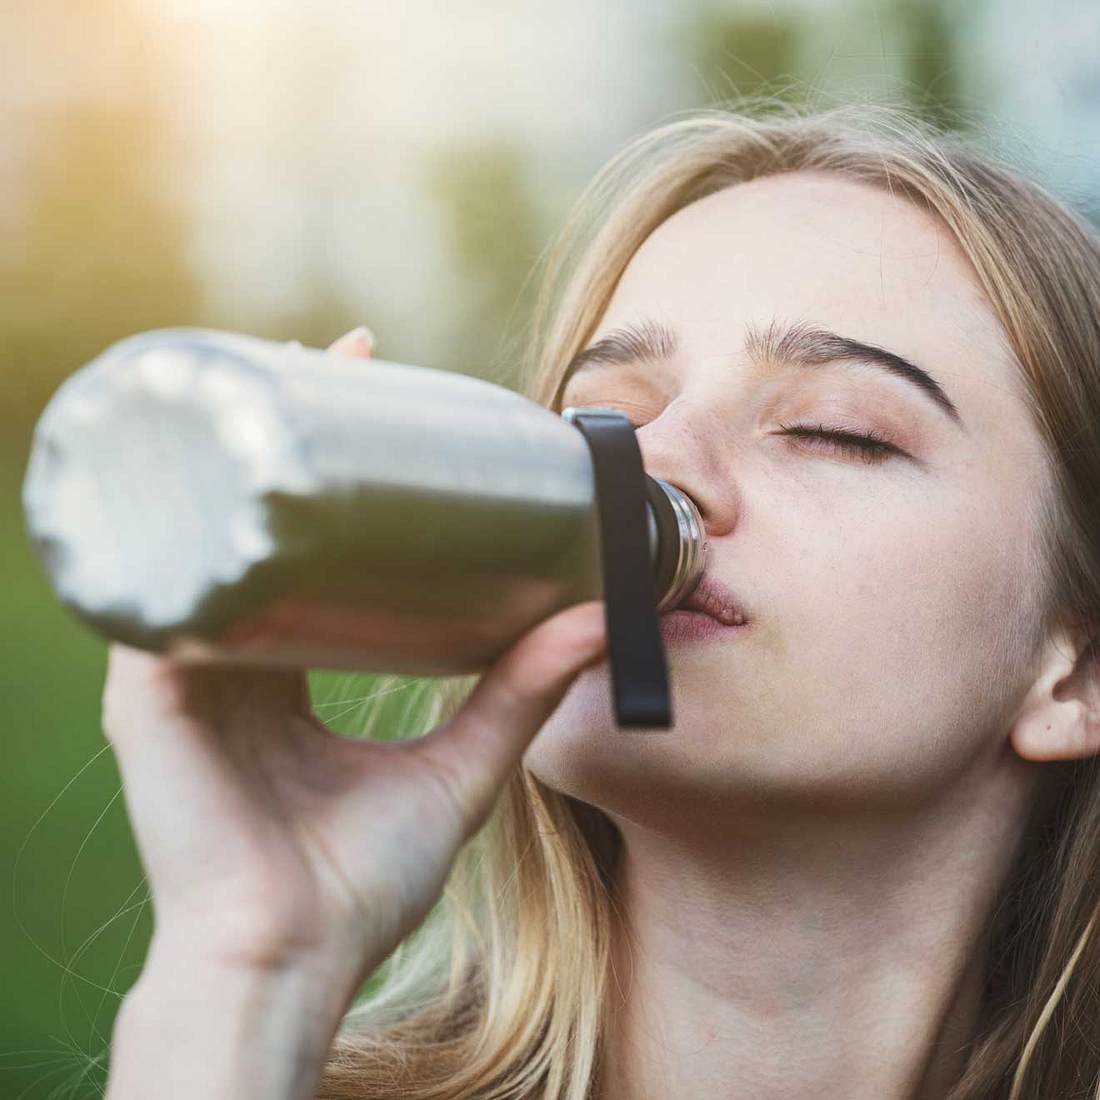 Tipps gegen Hitze in der Schule: Wasser trinken